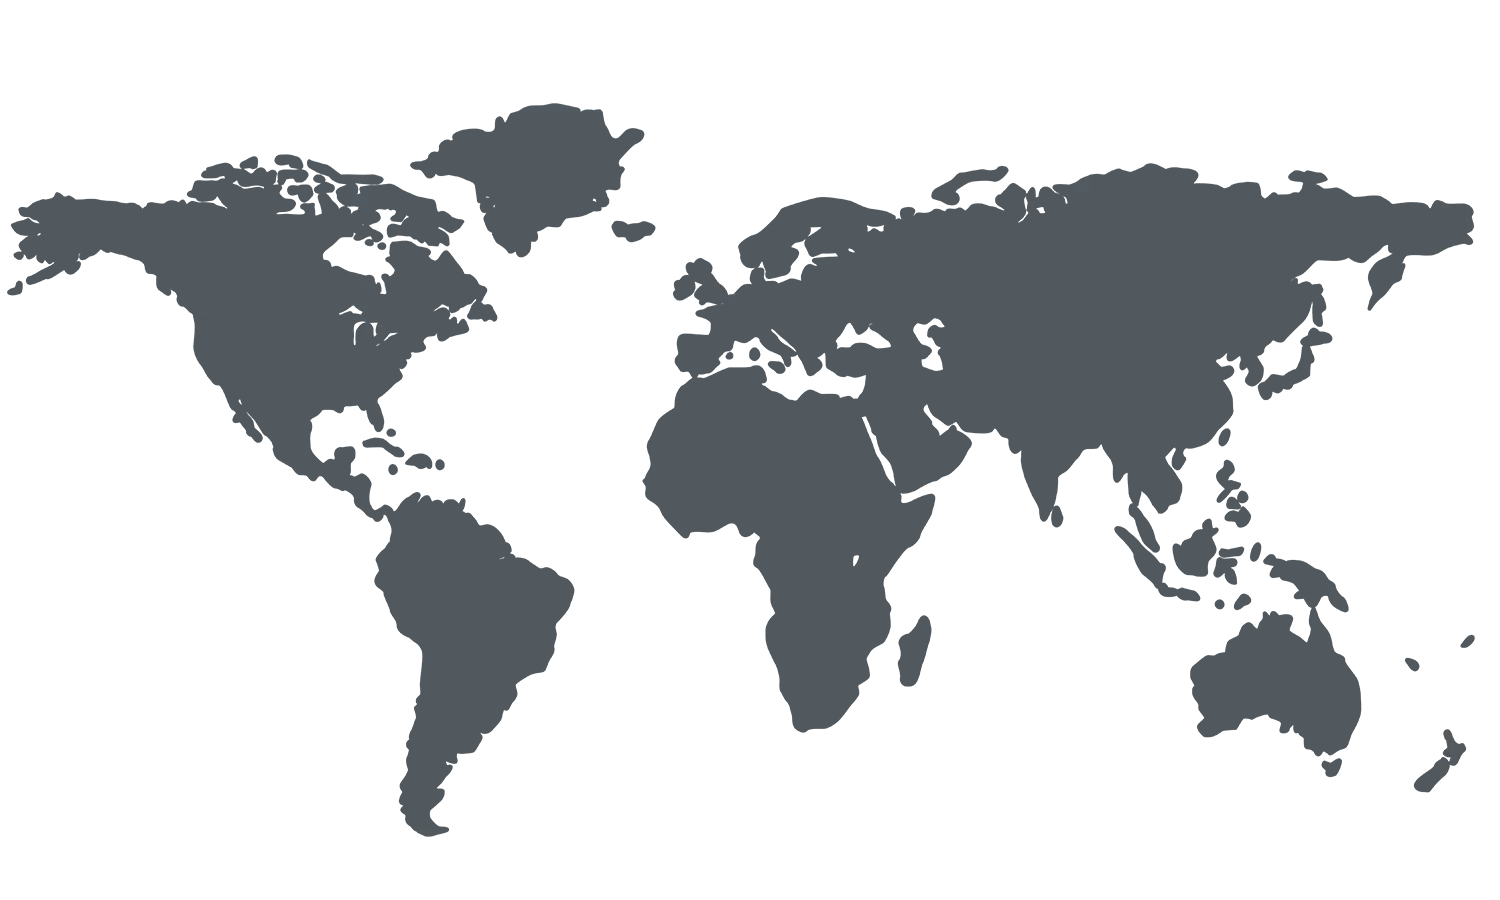 وکتور نقشه جهان